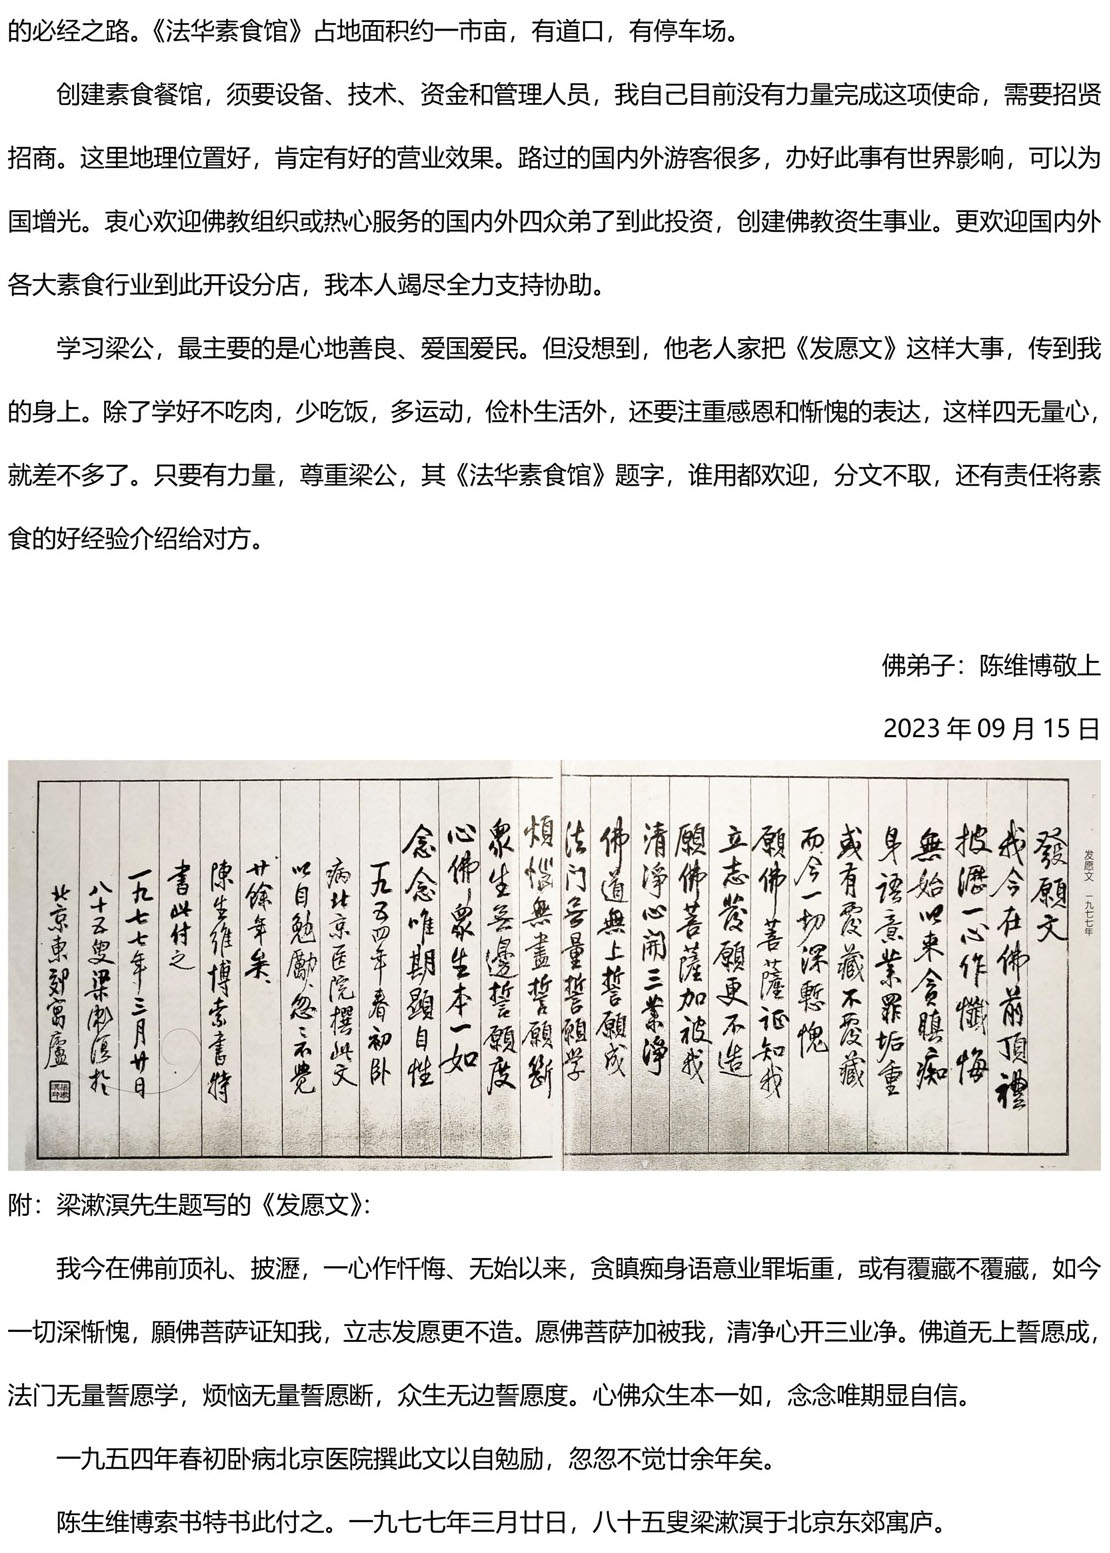 梁漱溟先生三十六年前为陈生维博题名墨宝《法华素食馆》